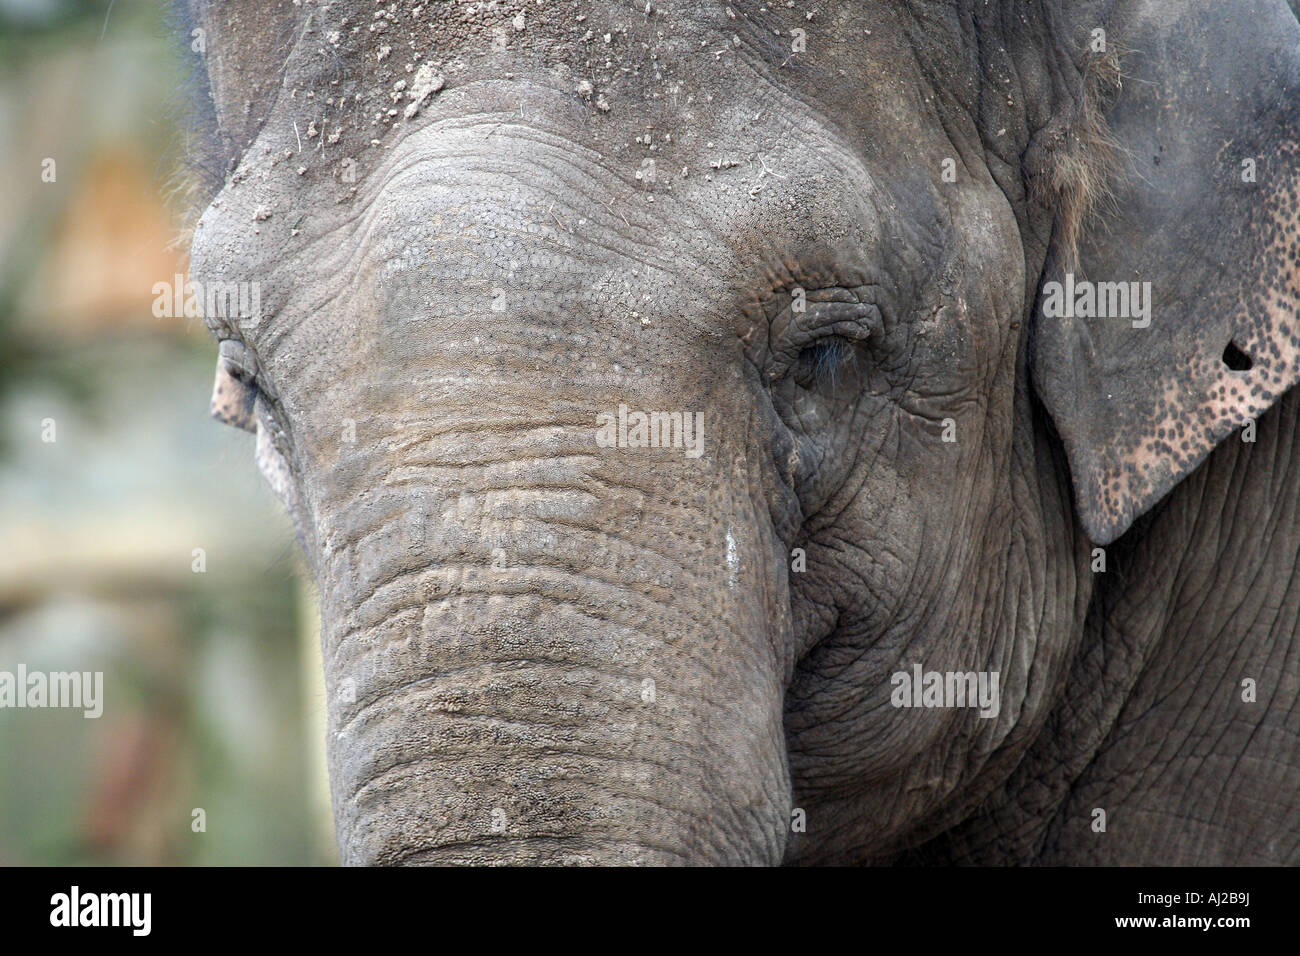 Portrait de l'éléphant d'montrant son visage, qu'on voit ici dans le parc national Kruger en Afrique du Sud. Banque D'Images